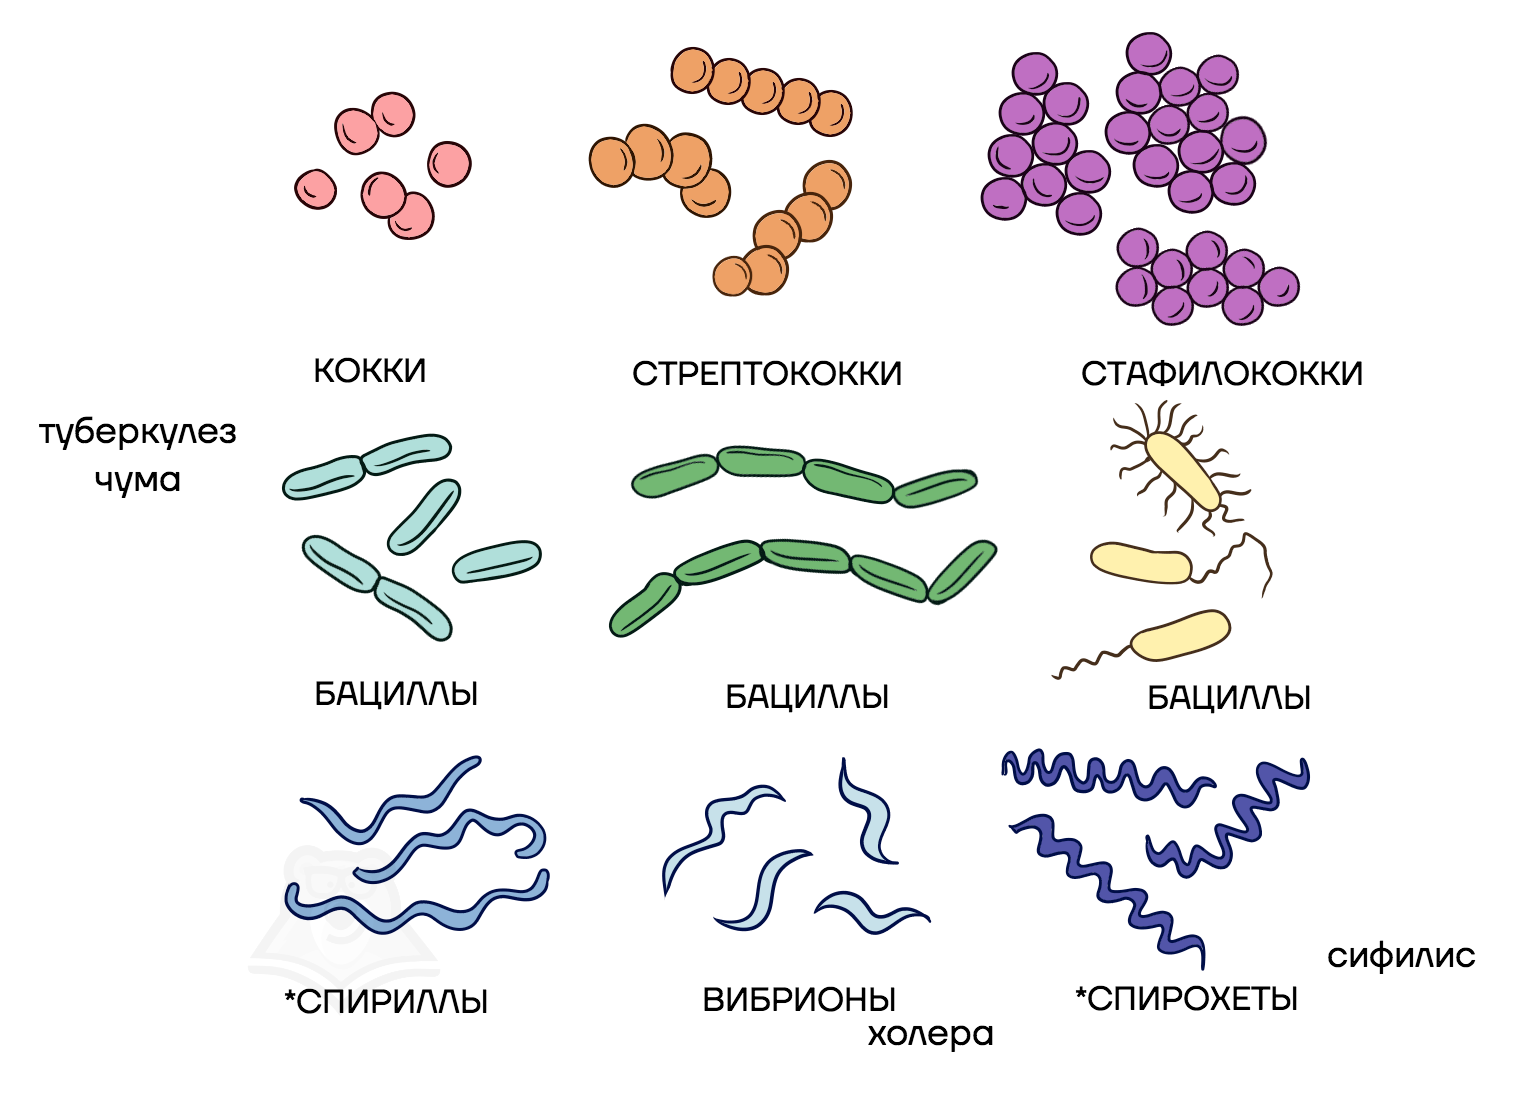 Назовите формы бактериальных клеток. Стрептококки бациллы спириллы вибрионы. Палочковидные бактерии бациллы. Вибрионы стафилококки бациллы спириллы. Кокки бациллы вибрионы спириллы.